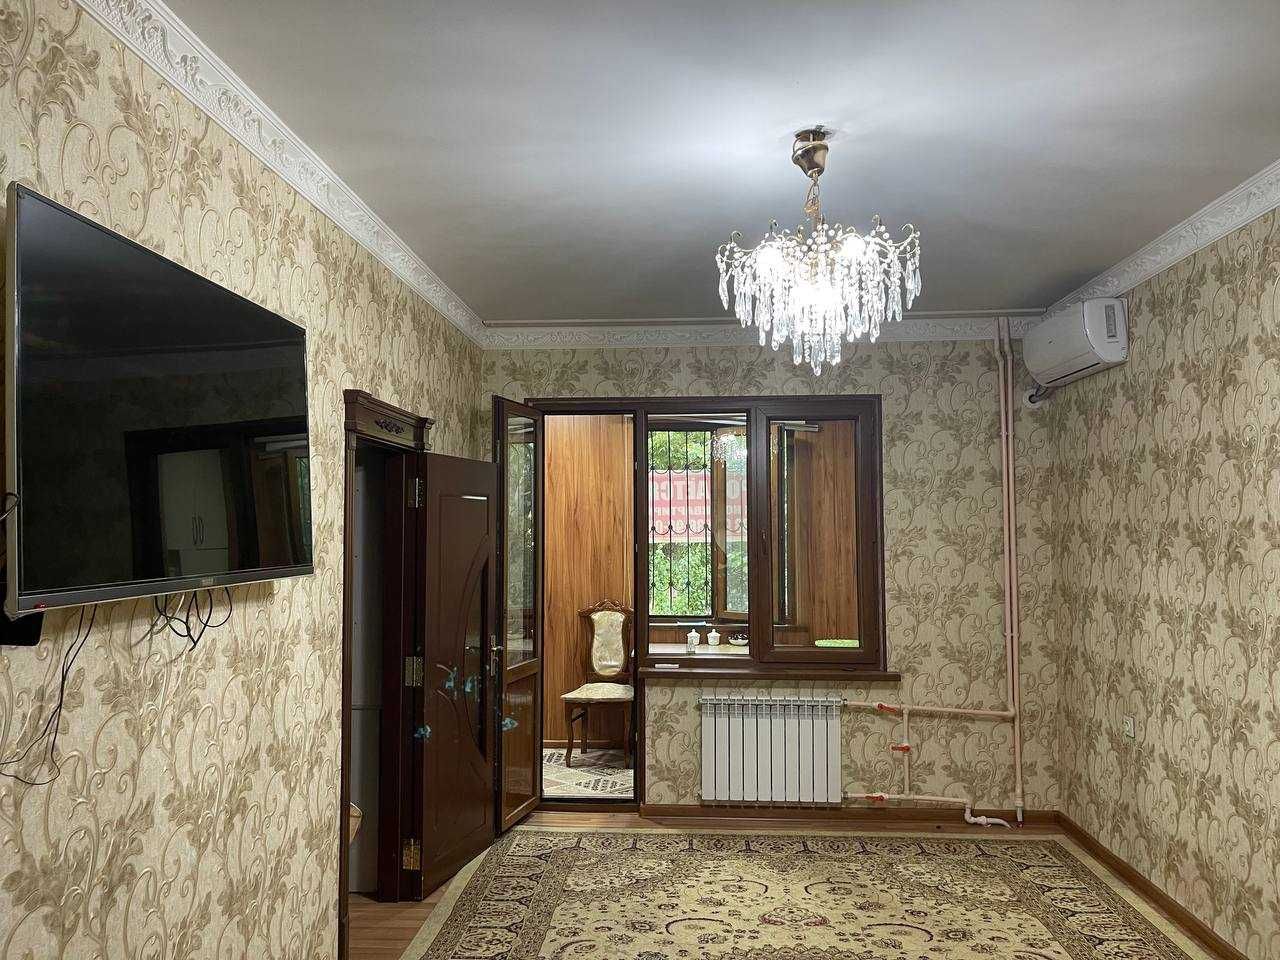 СРОЧНО продаётся квартира ТТЗ-1 2-х комнатная.  (157344)